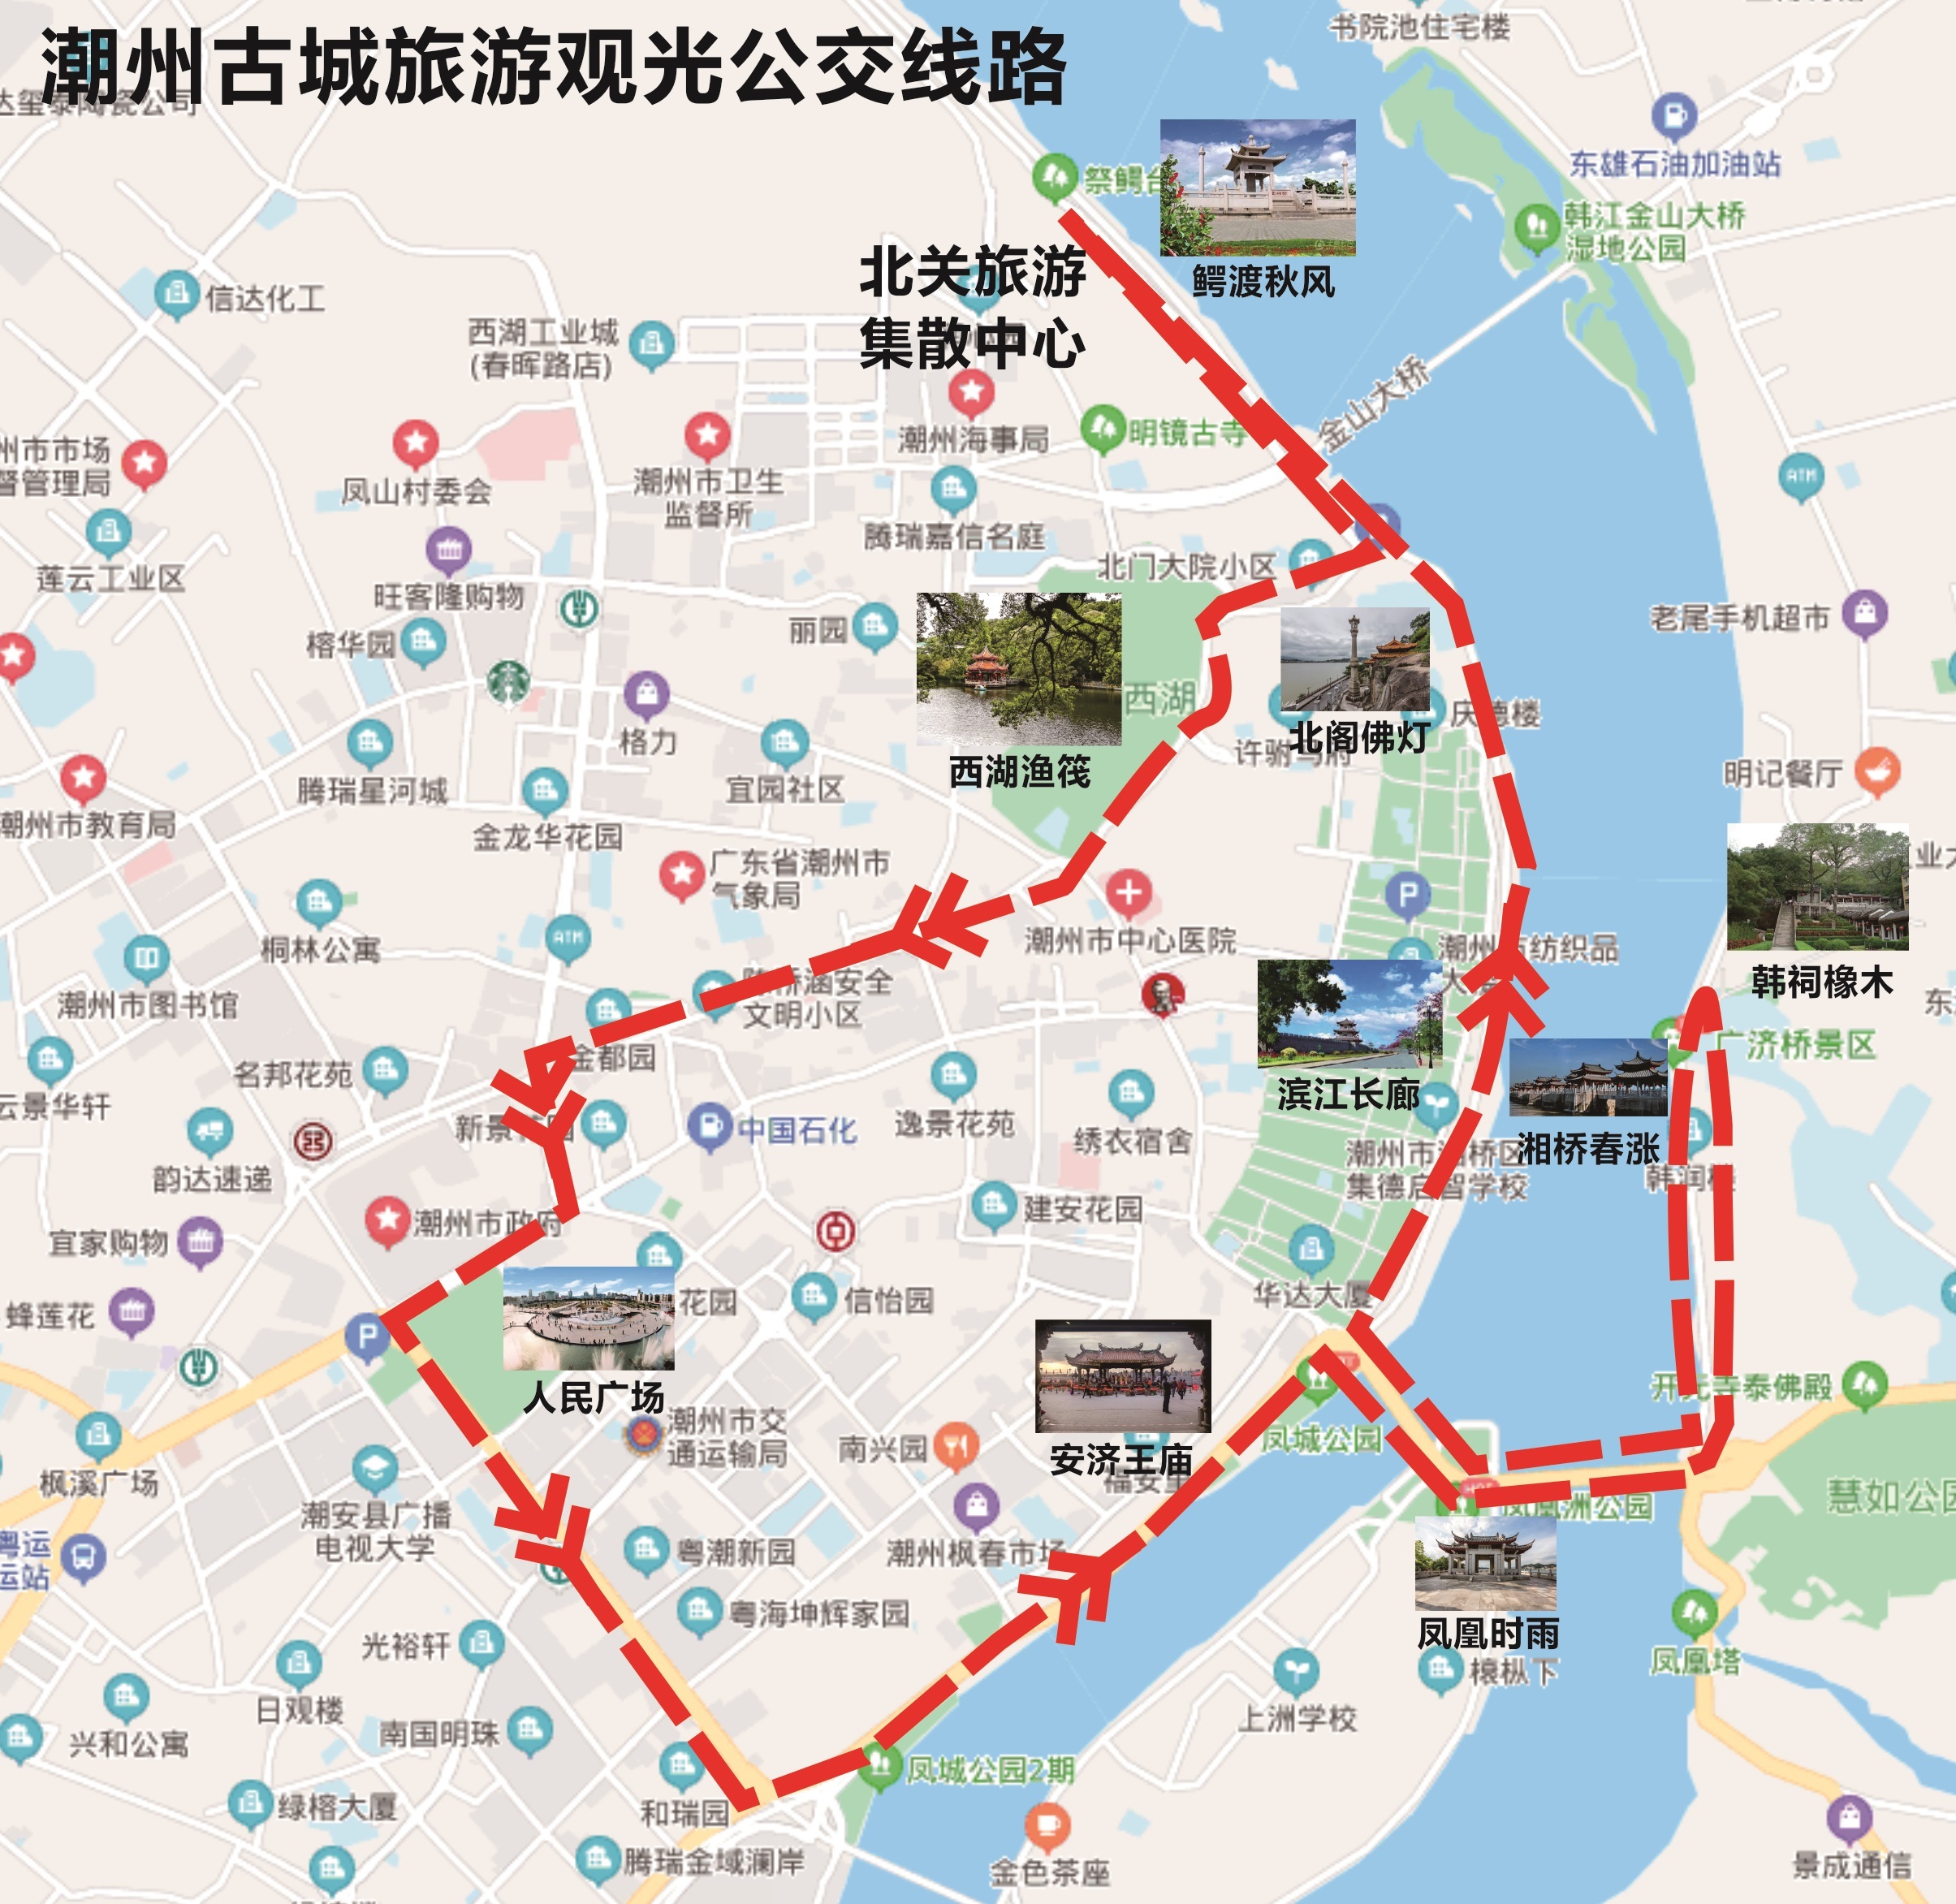 双层观光巴士途经潮州广济桥、滨江长廊、韩文公祠等景点。